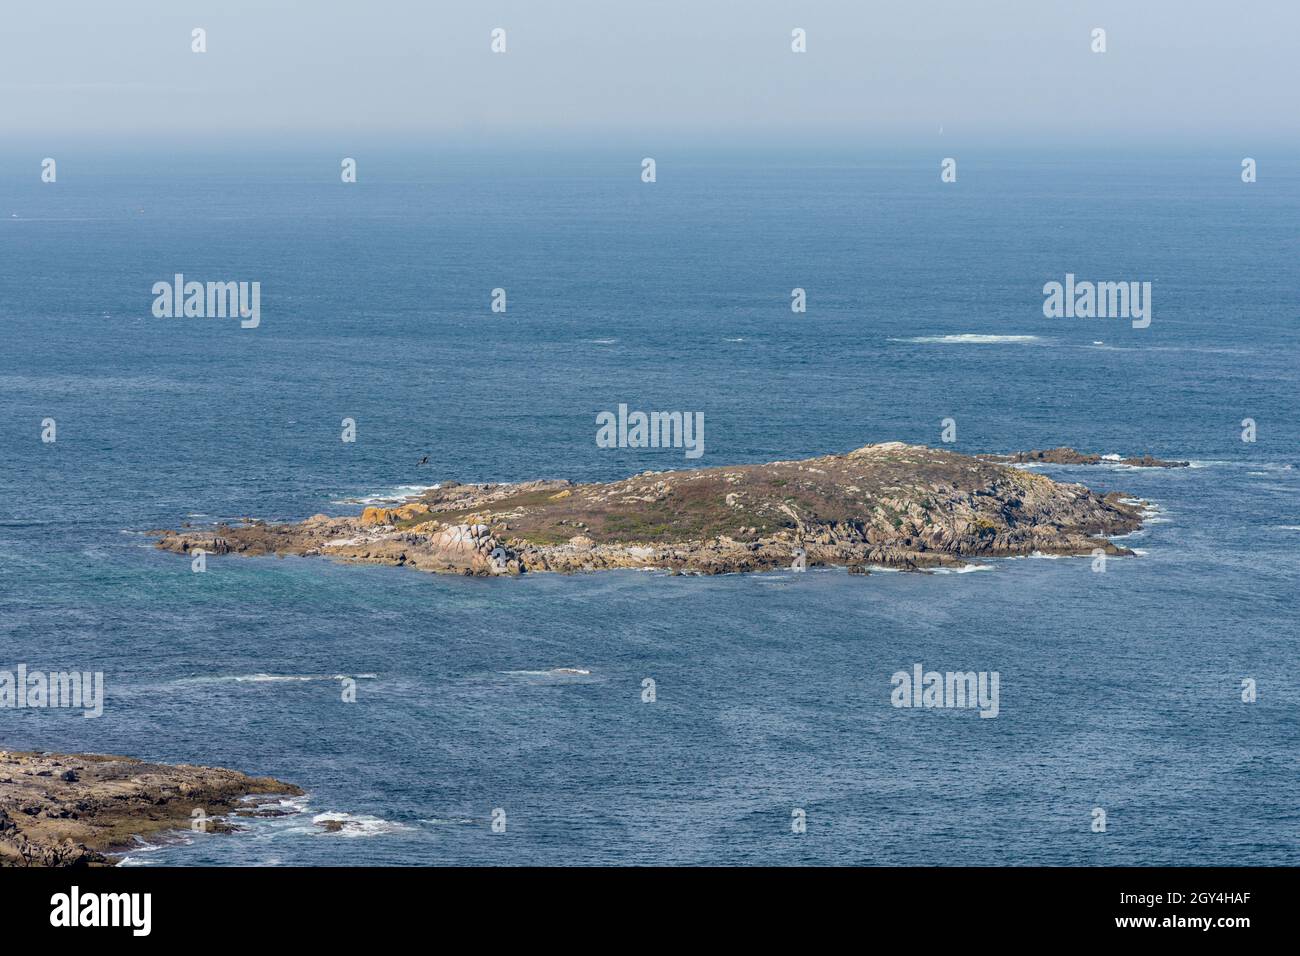 Cíes Islands, three islands forming the Atlantic islands, national park, Ria de Vigo estuary, Galicia, Spain Stock Photo